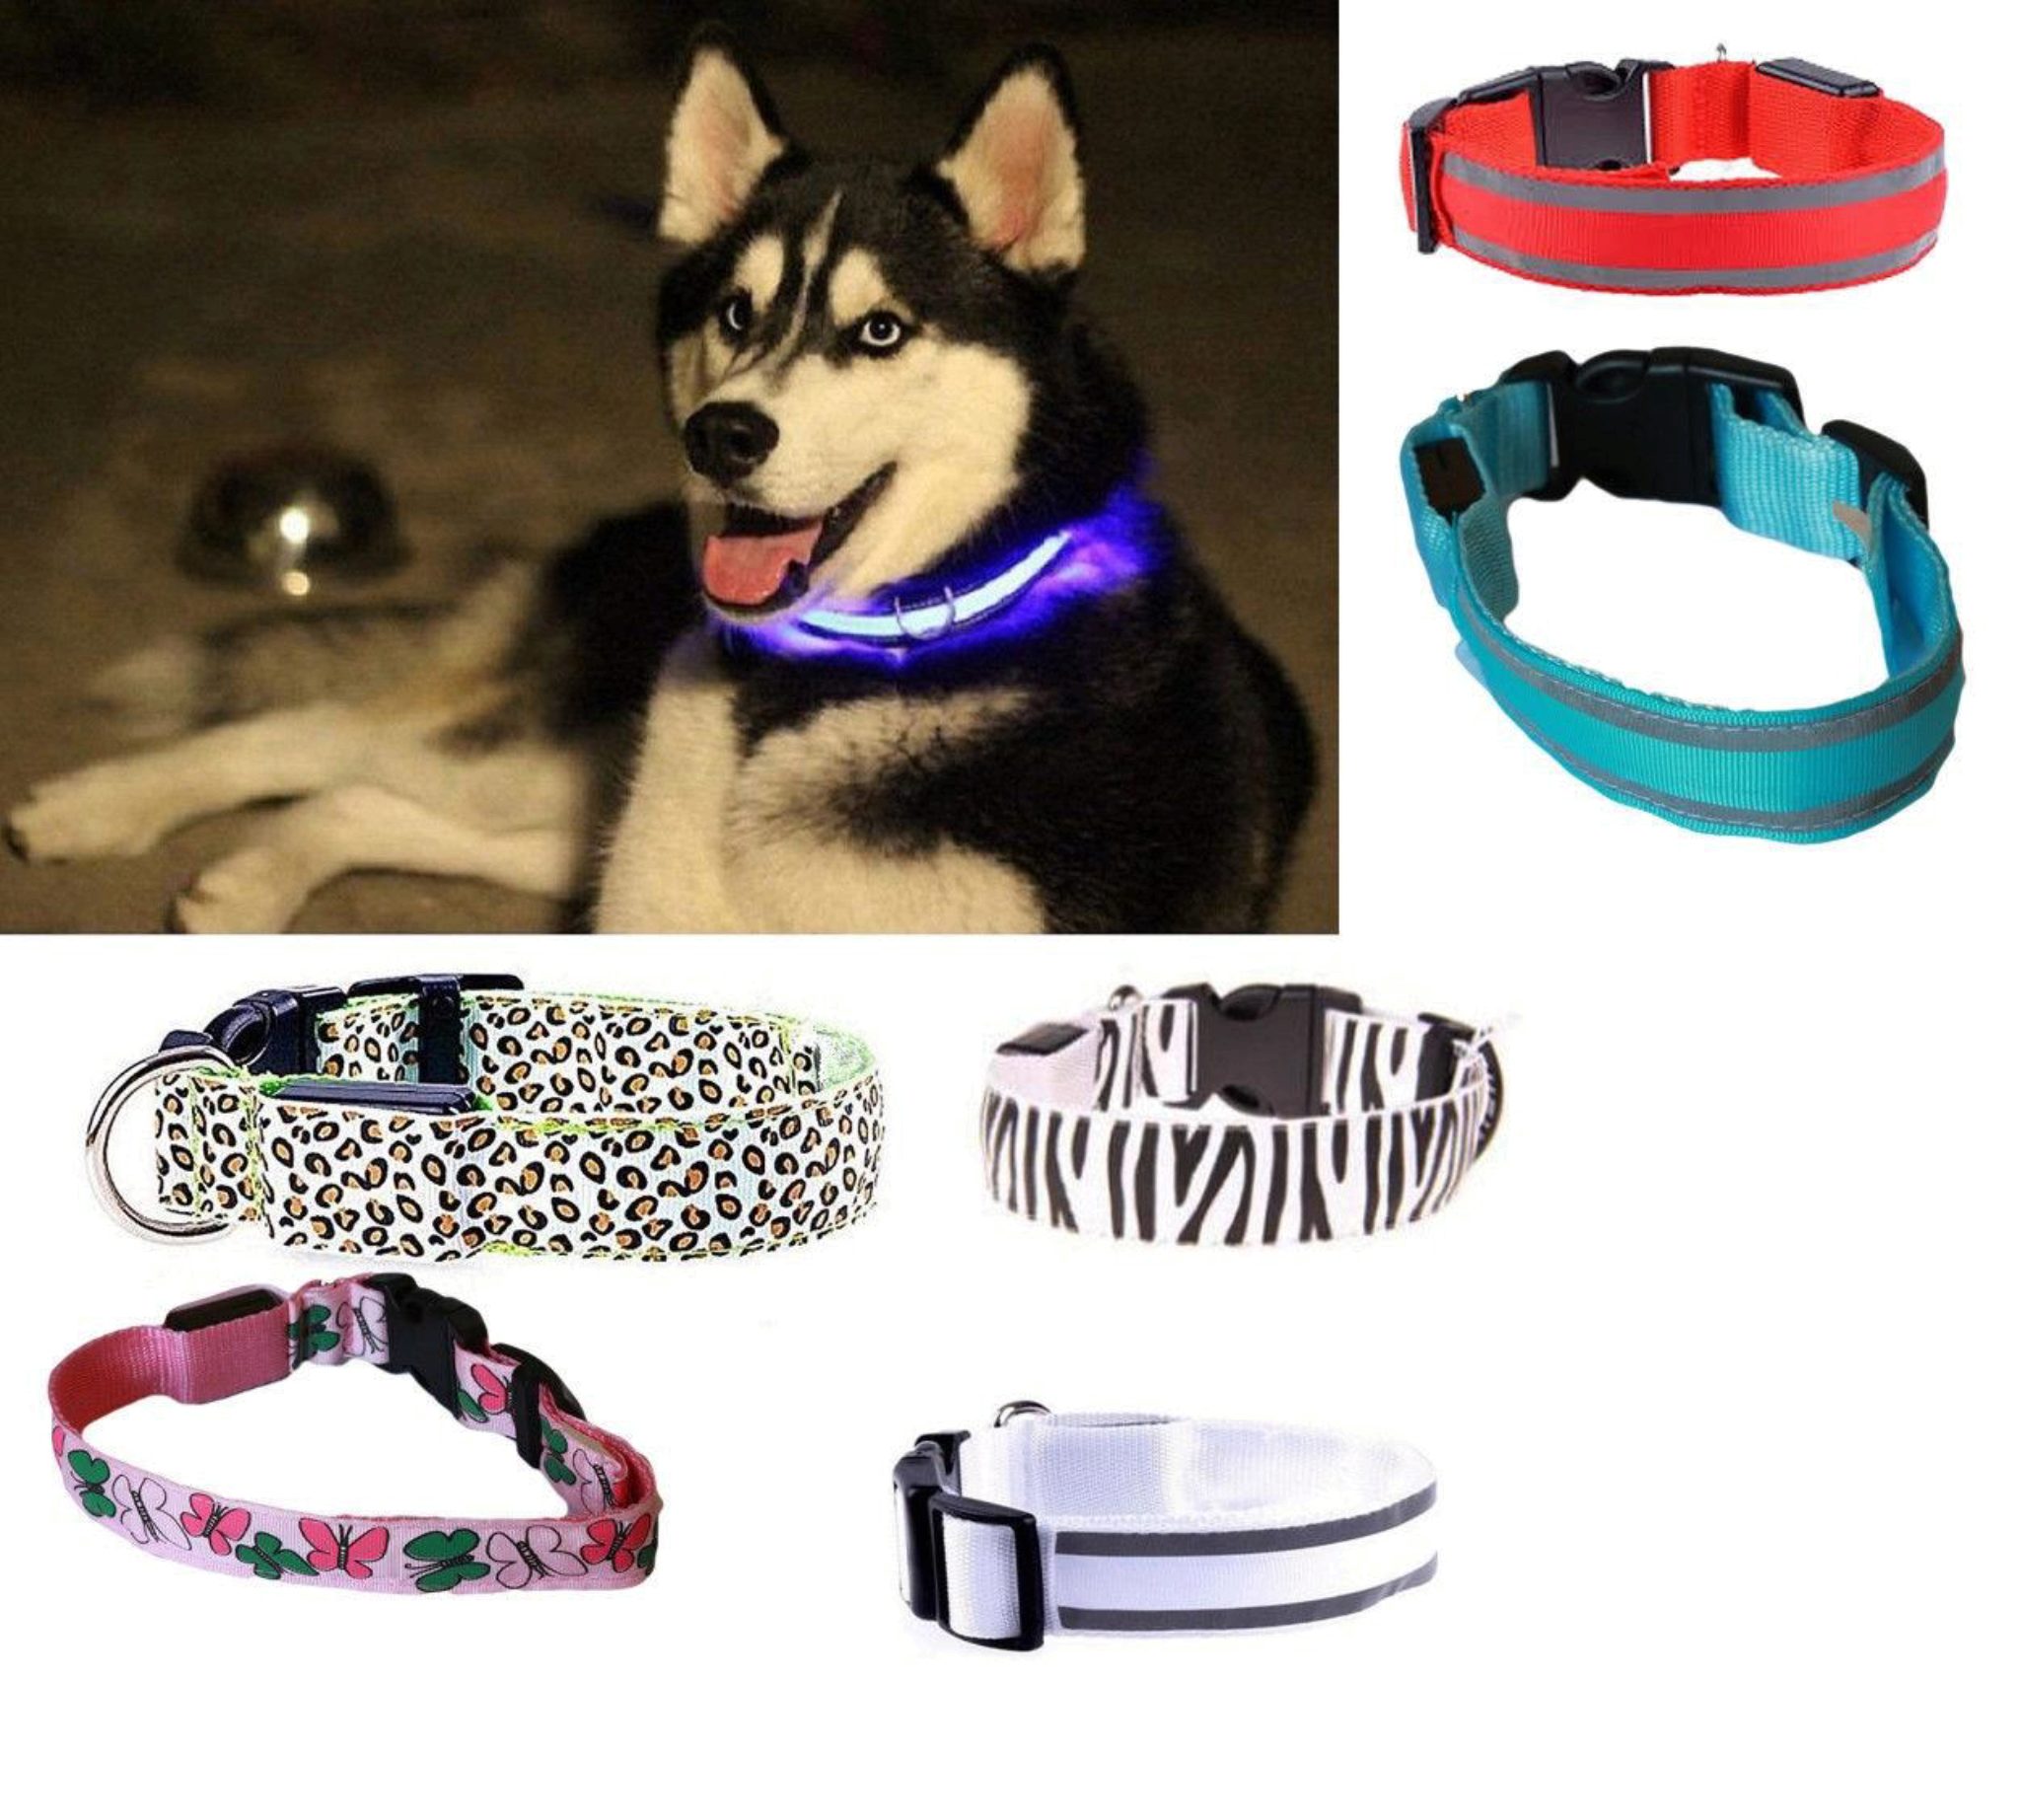 Collare per Cane Regolabili 8 Modalità per Cani di Piccola/Media/Grande Plartree Collare Luminoso per Cani LED Ricaricabile USB,Collare Luminoso di Sicurezza per Animale Impermeabile